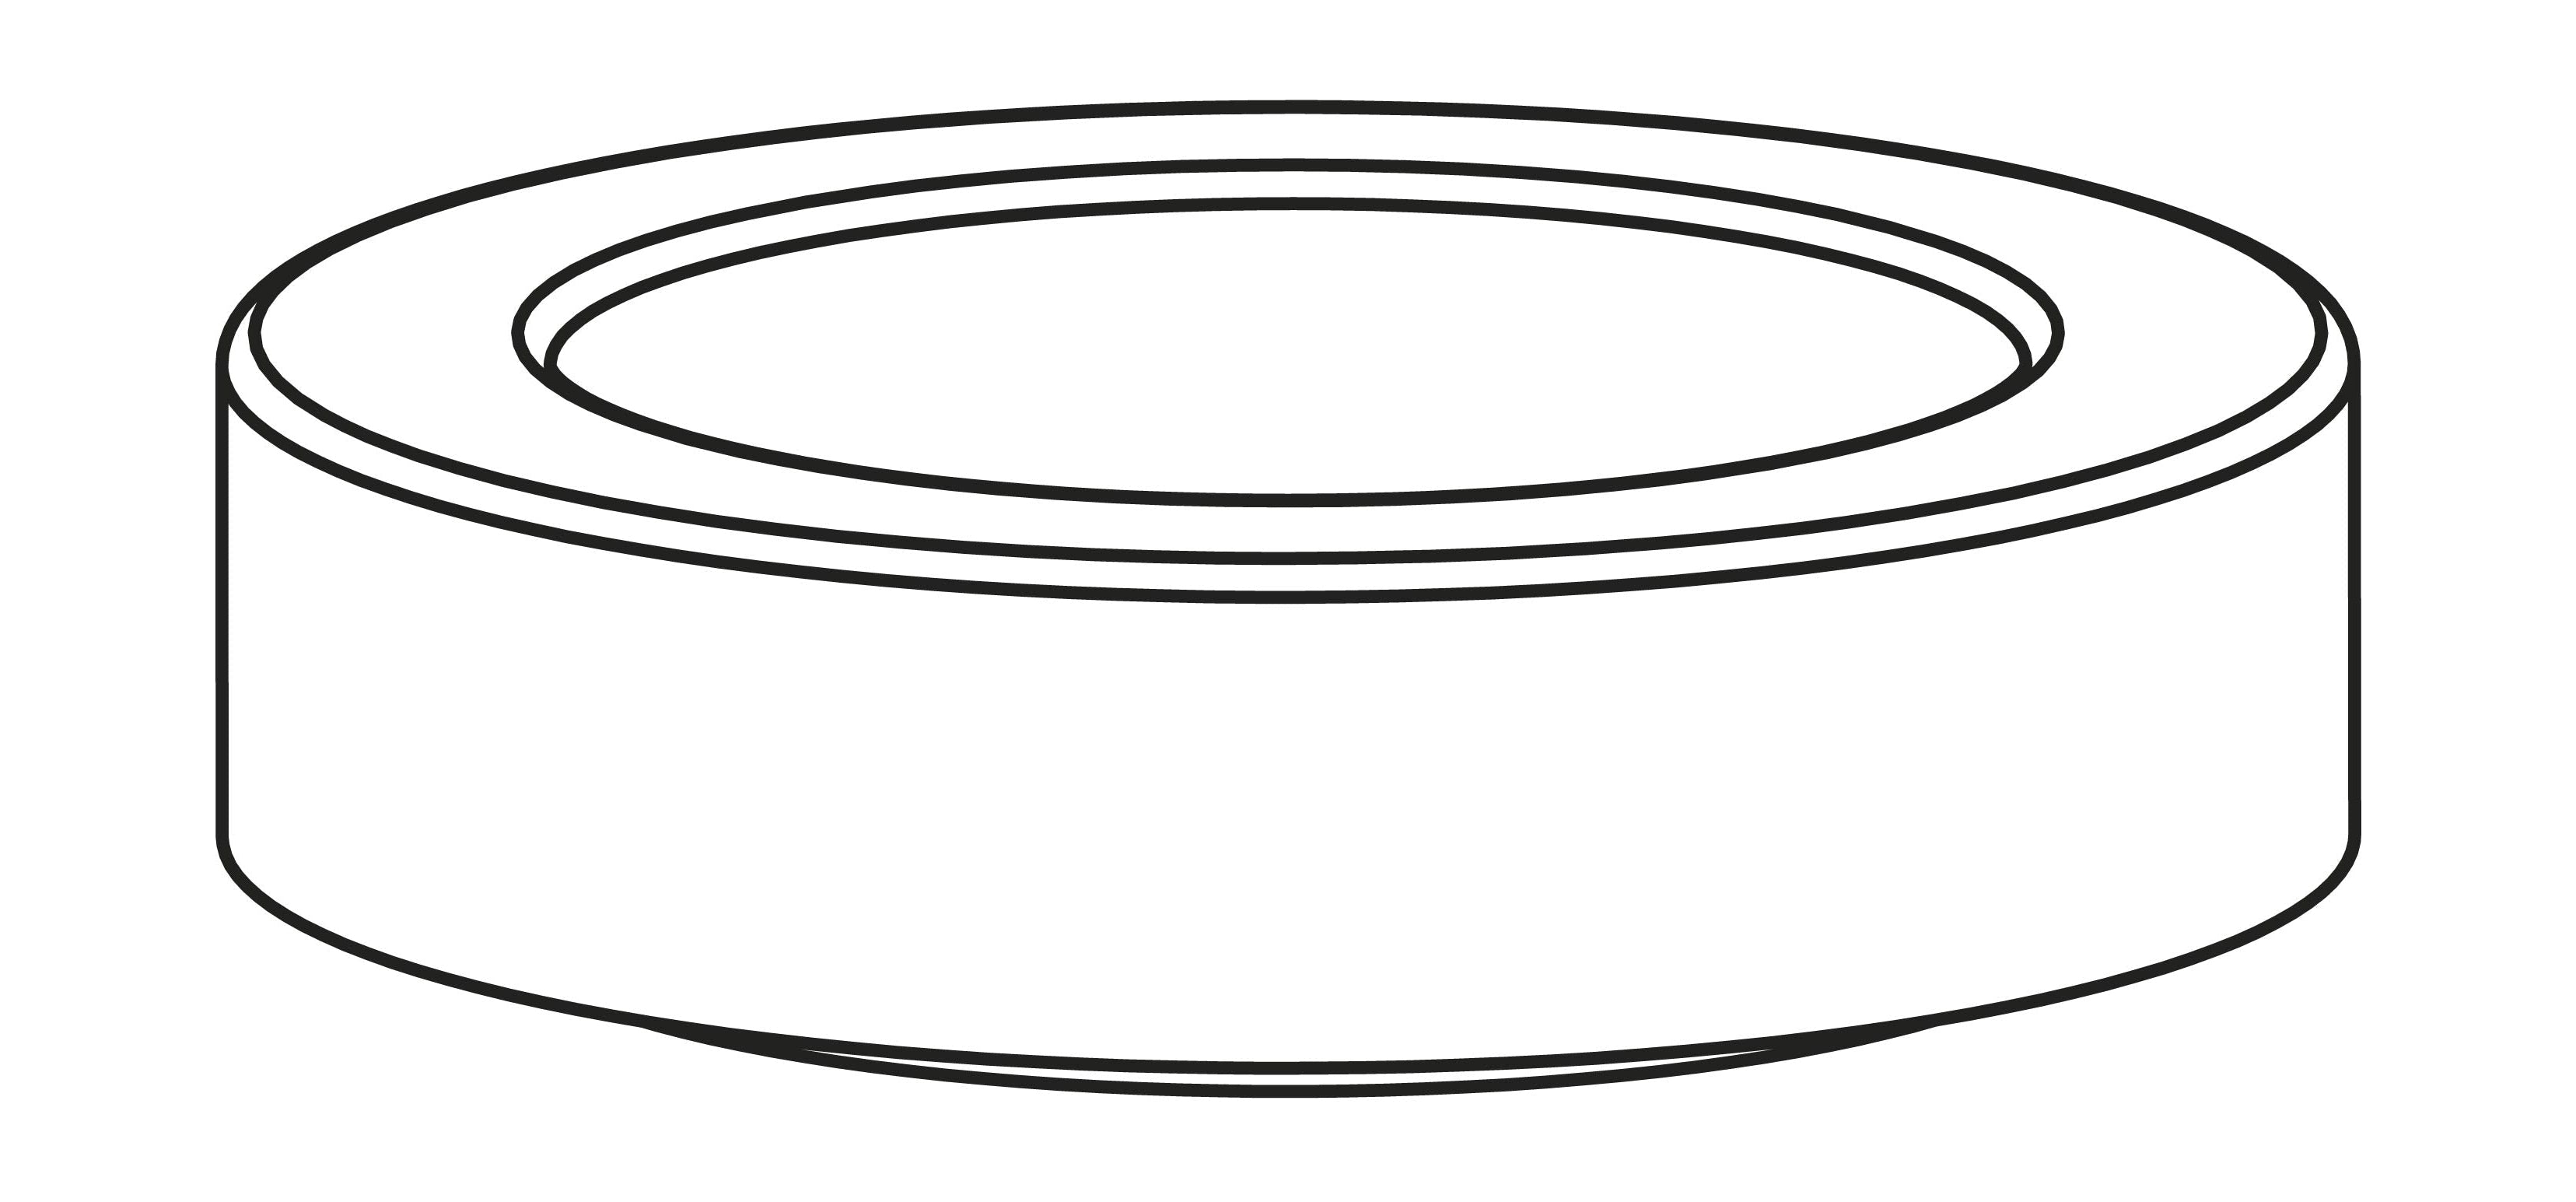 Stelton Amphora -förpackning för termos kanna - 221, 222, svart